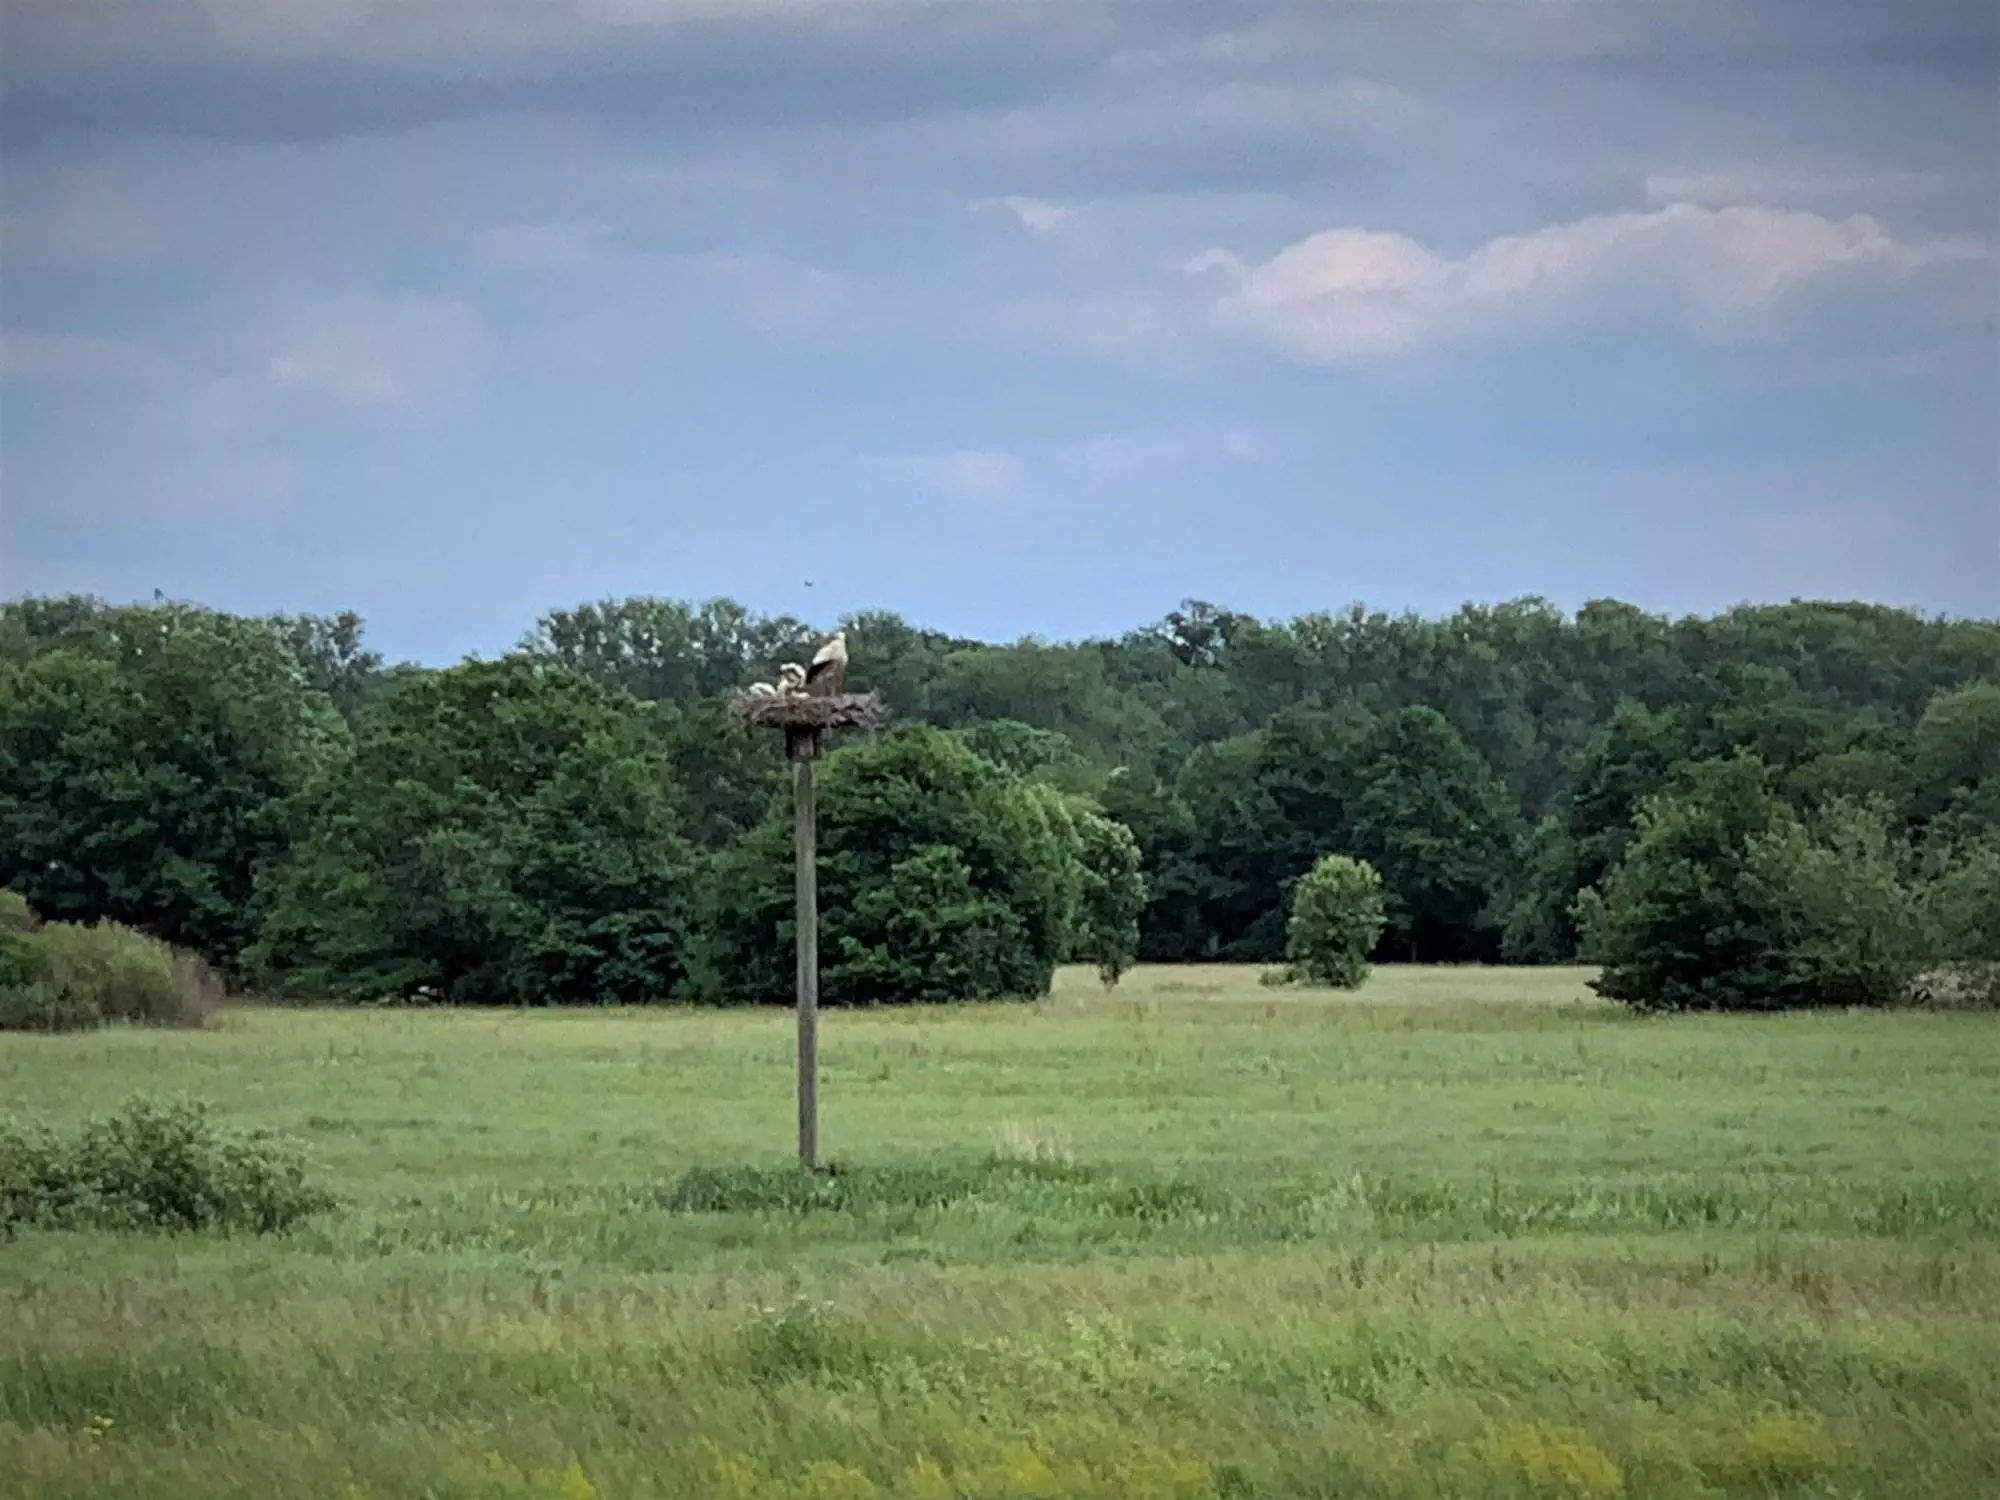 Ein Adler thront auf einer Stange in einem Feld.